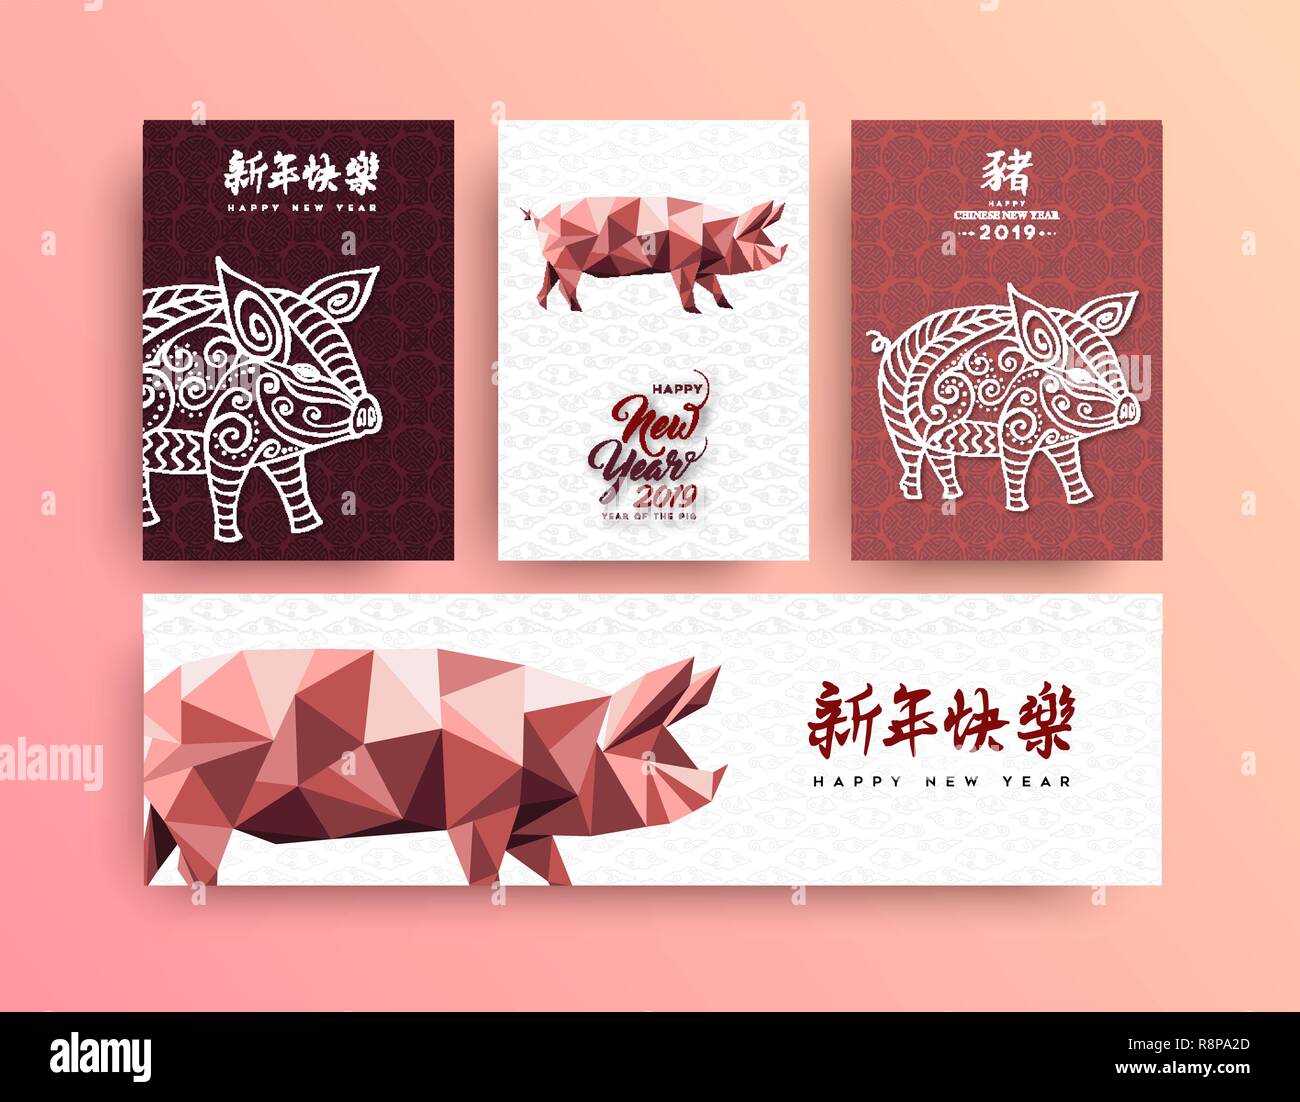 Chinesisches Neues Jahr 2019 Grußkarten-Kollektion mit Low Poly Abbildung: rosa Schwein. Umfasst traditionelle Kalligraphie, Schwein bedeutet, Jahreszeiten greeti Stock Vektor